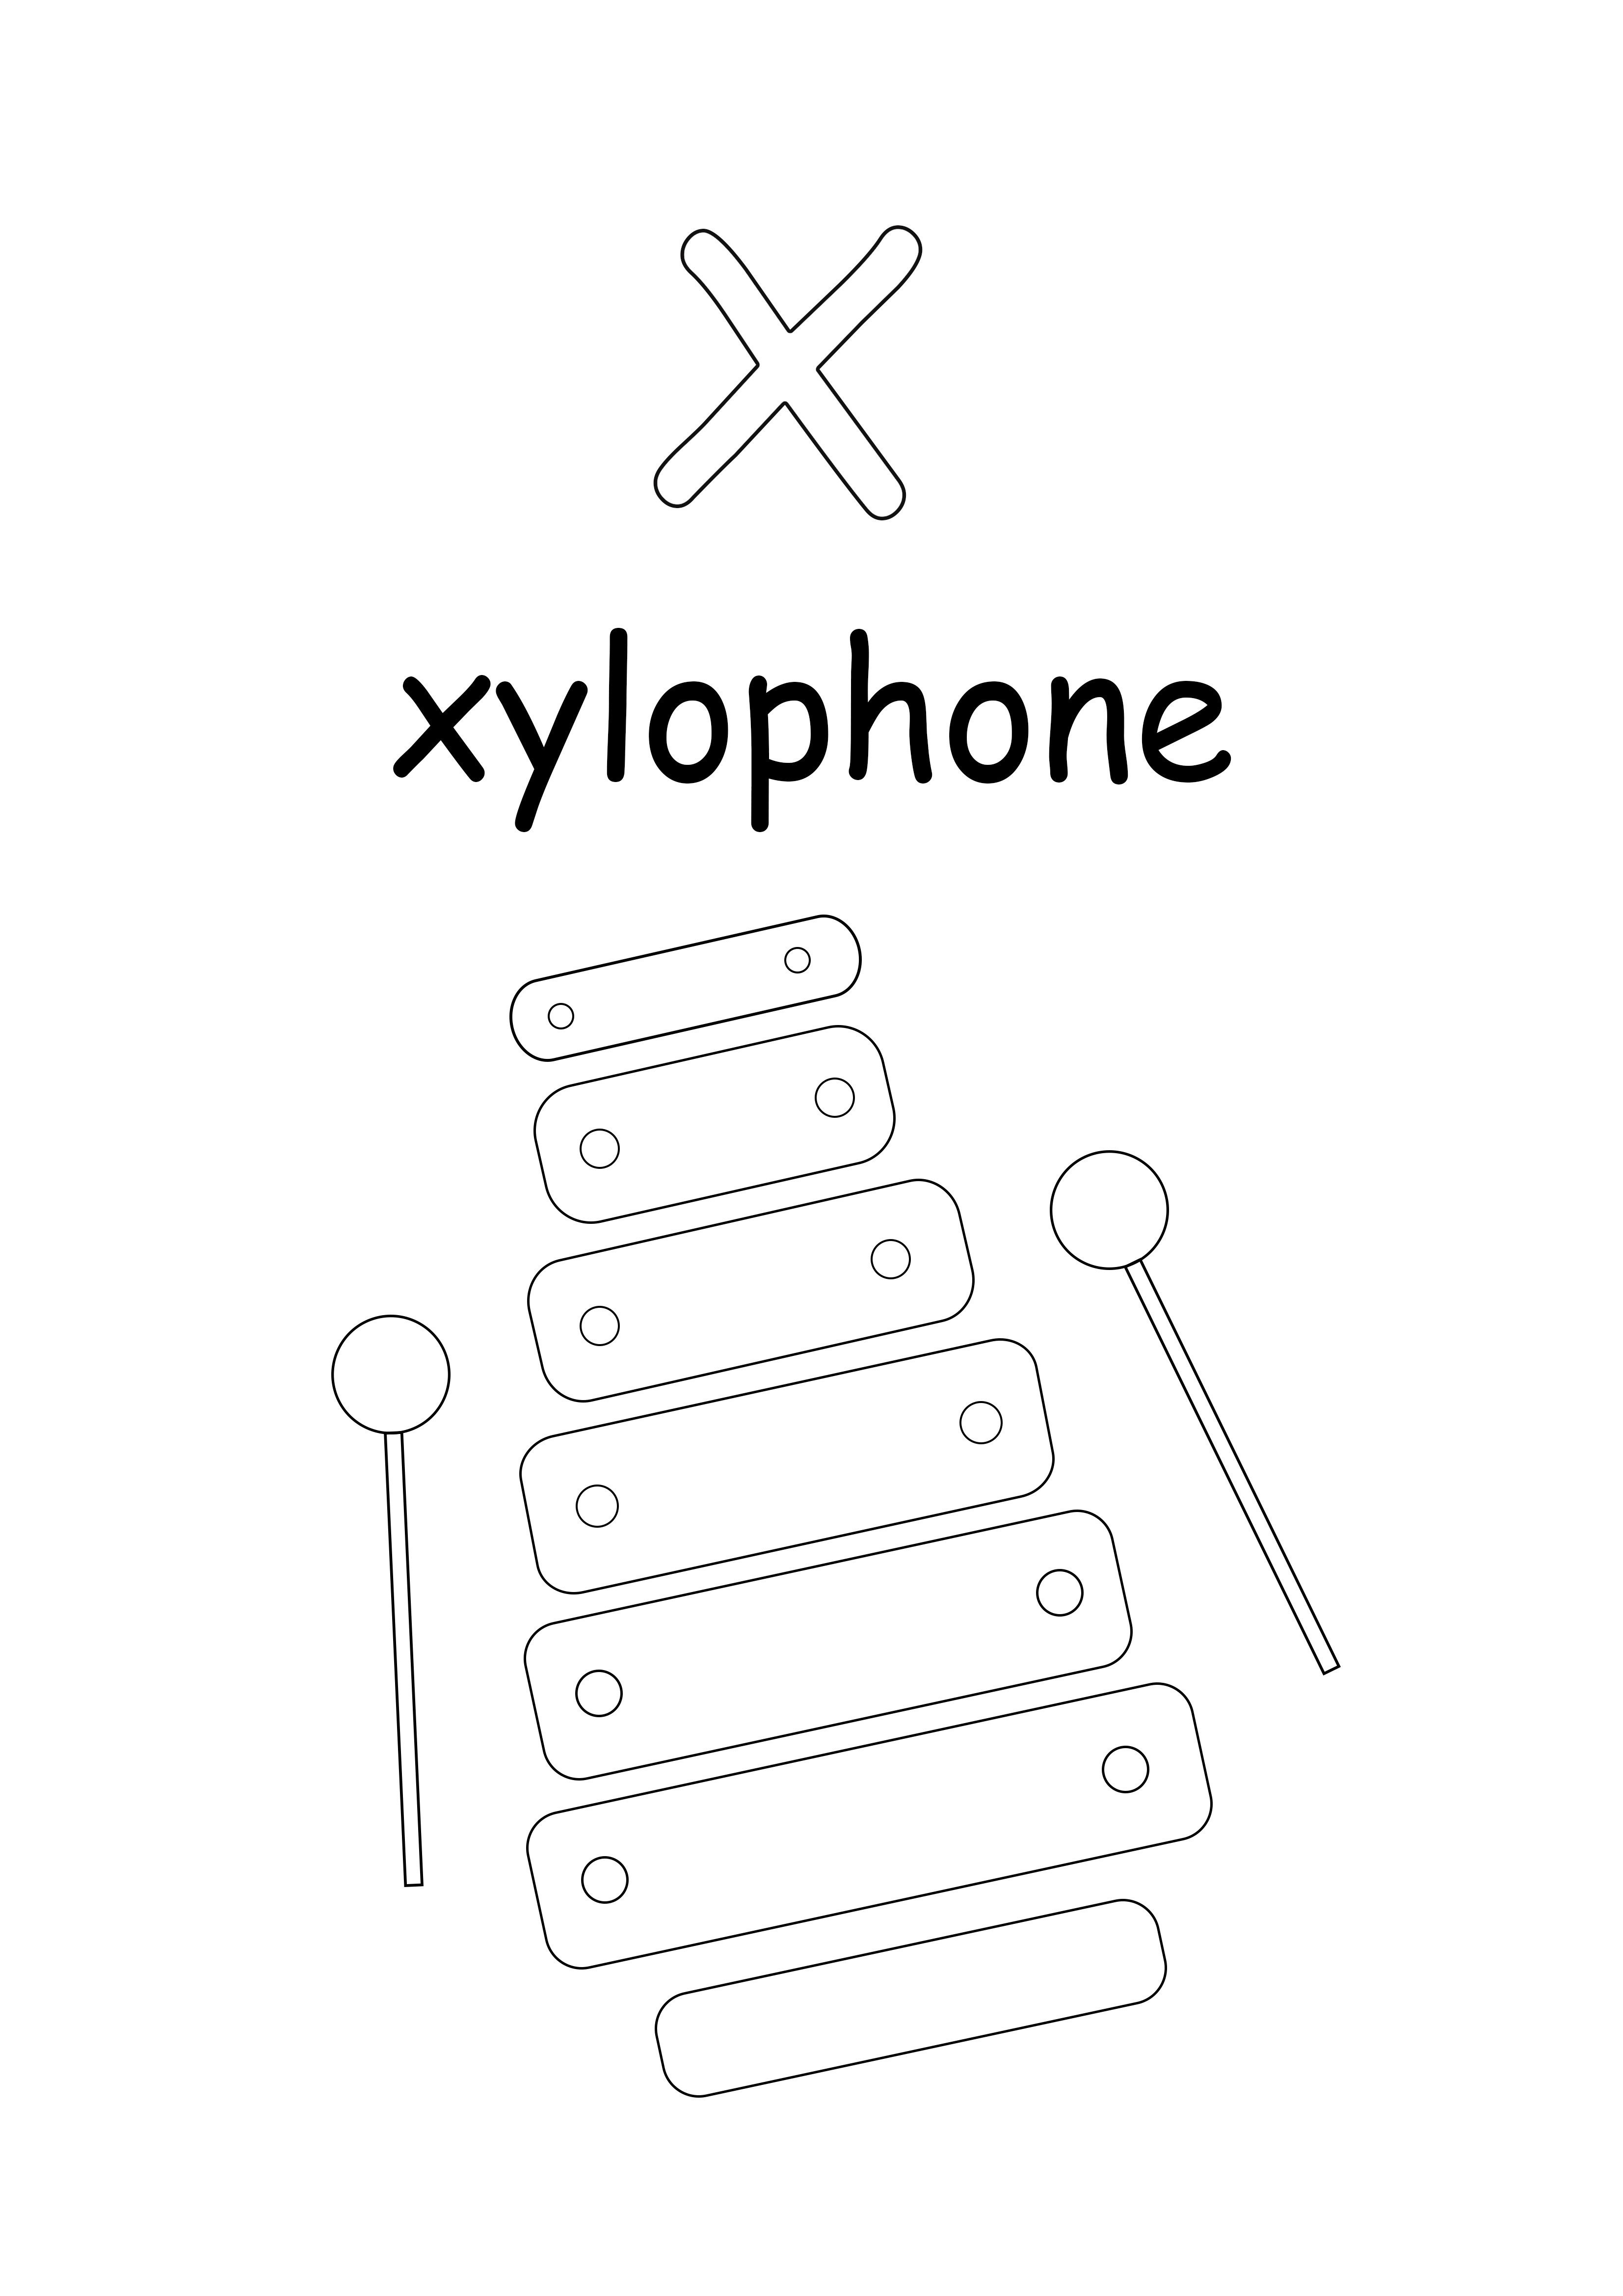 Der Kleinbuchstabe x steht für xylophonfreies Färben und Drucken